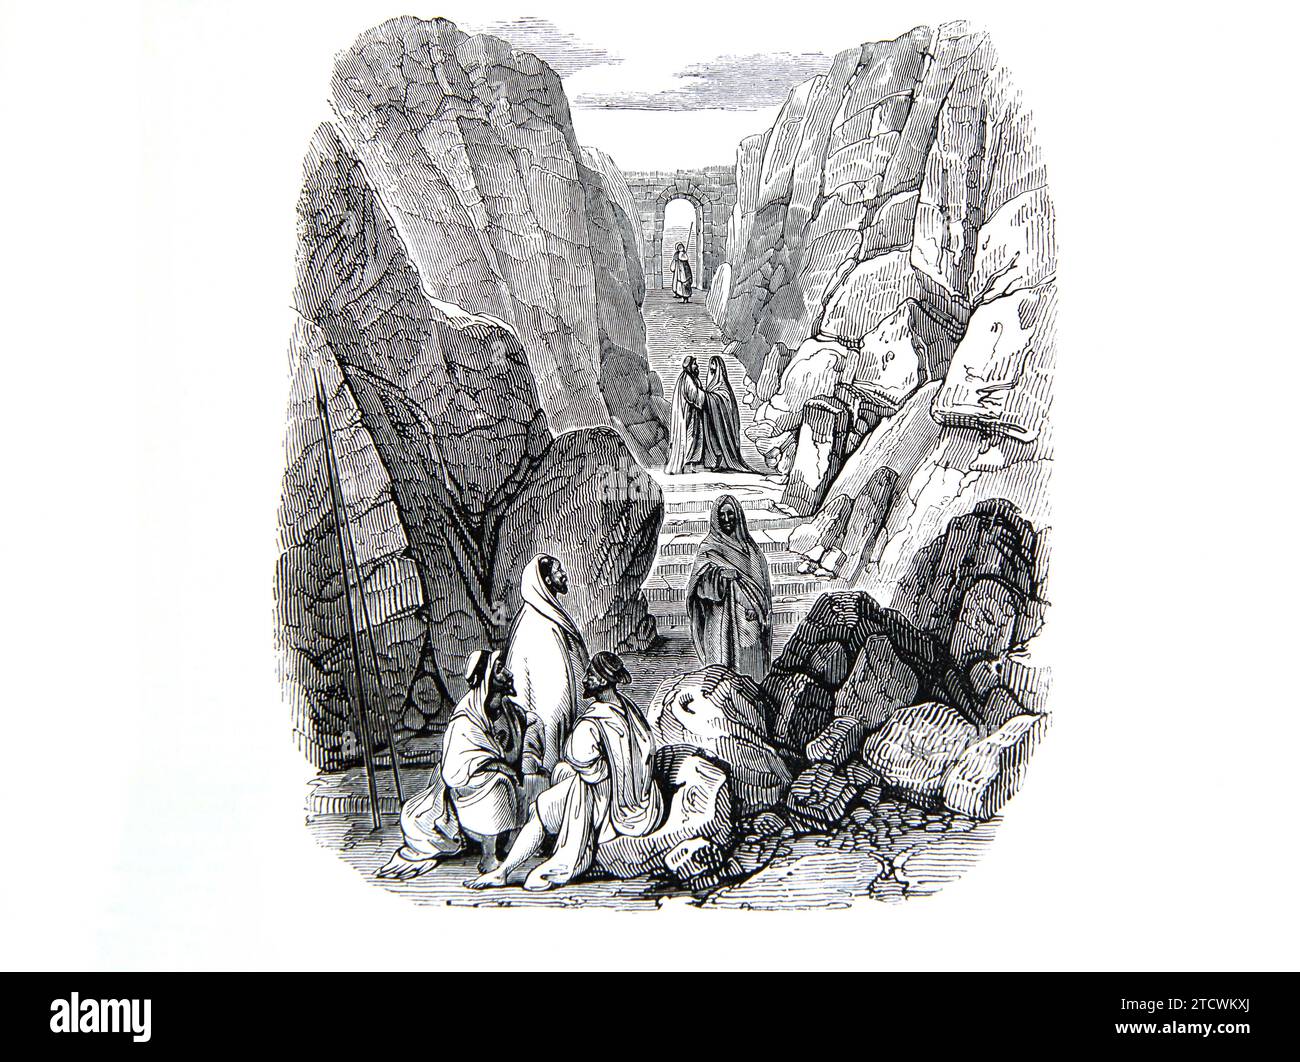 Illustration des Aufstiegs zum Jebal Musa - Moses kommt vom Berg Sinai herunter, um mit den Menschen in der Bibel des 19. Jahrhunderts zu sprechen Stockfoto